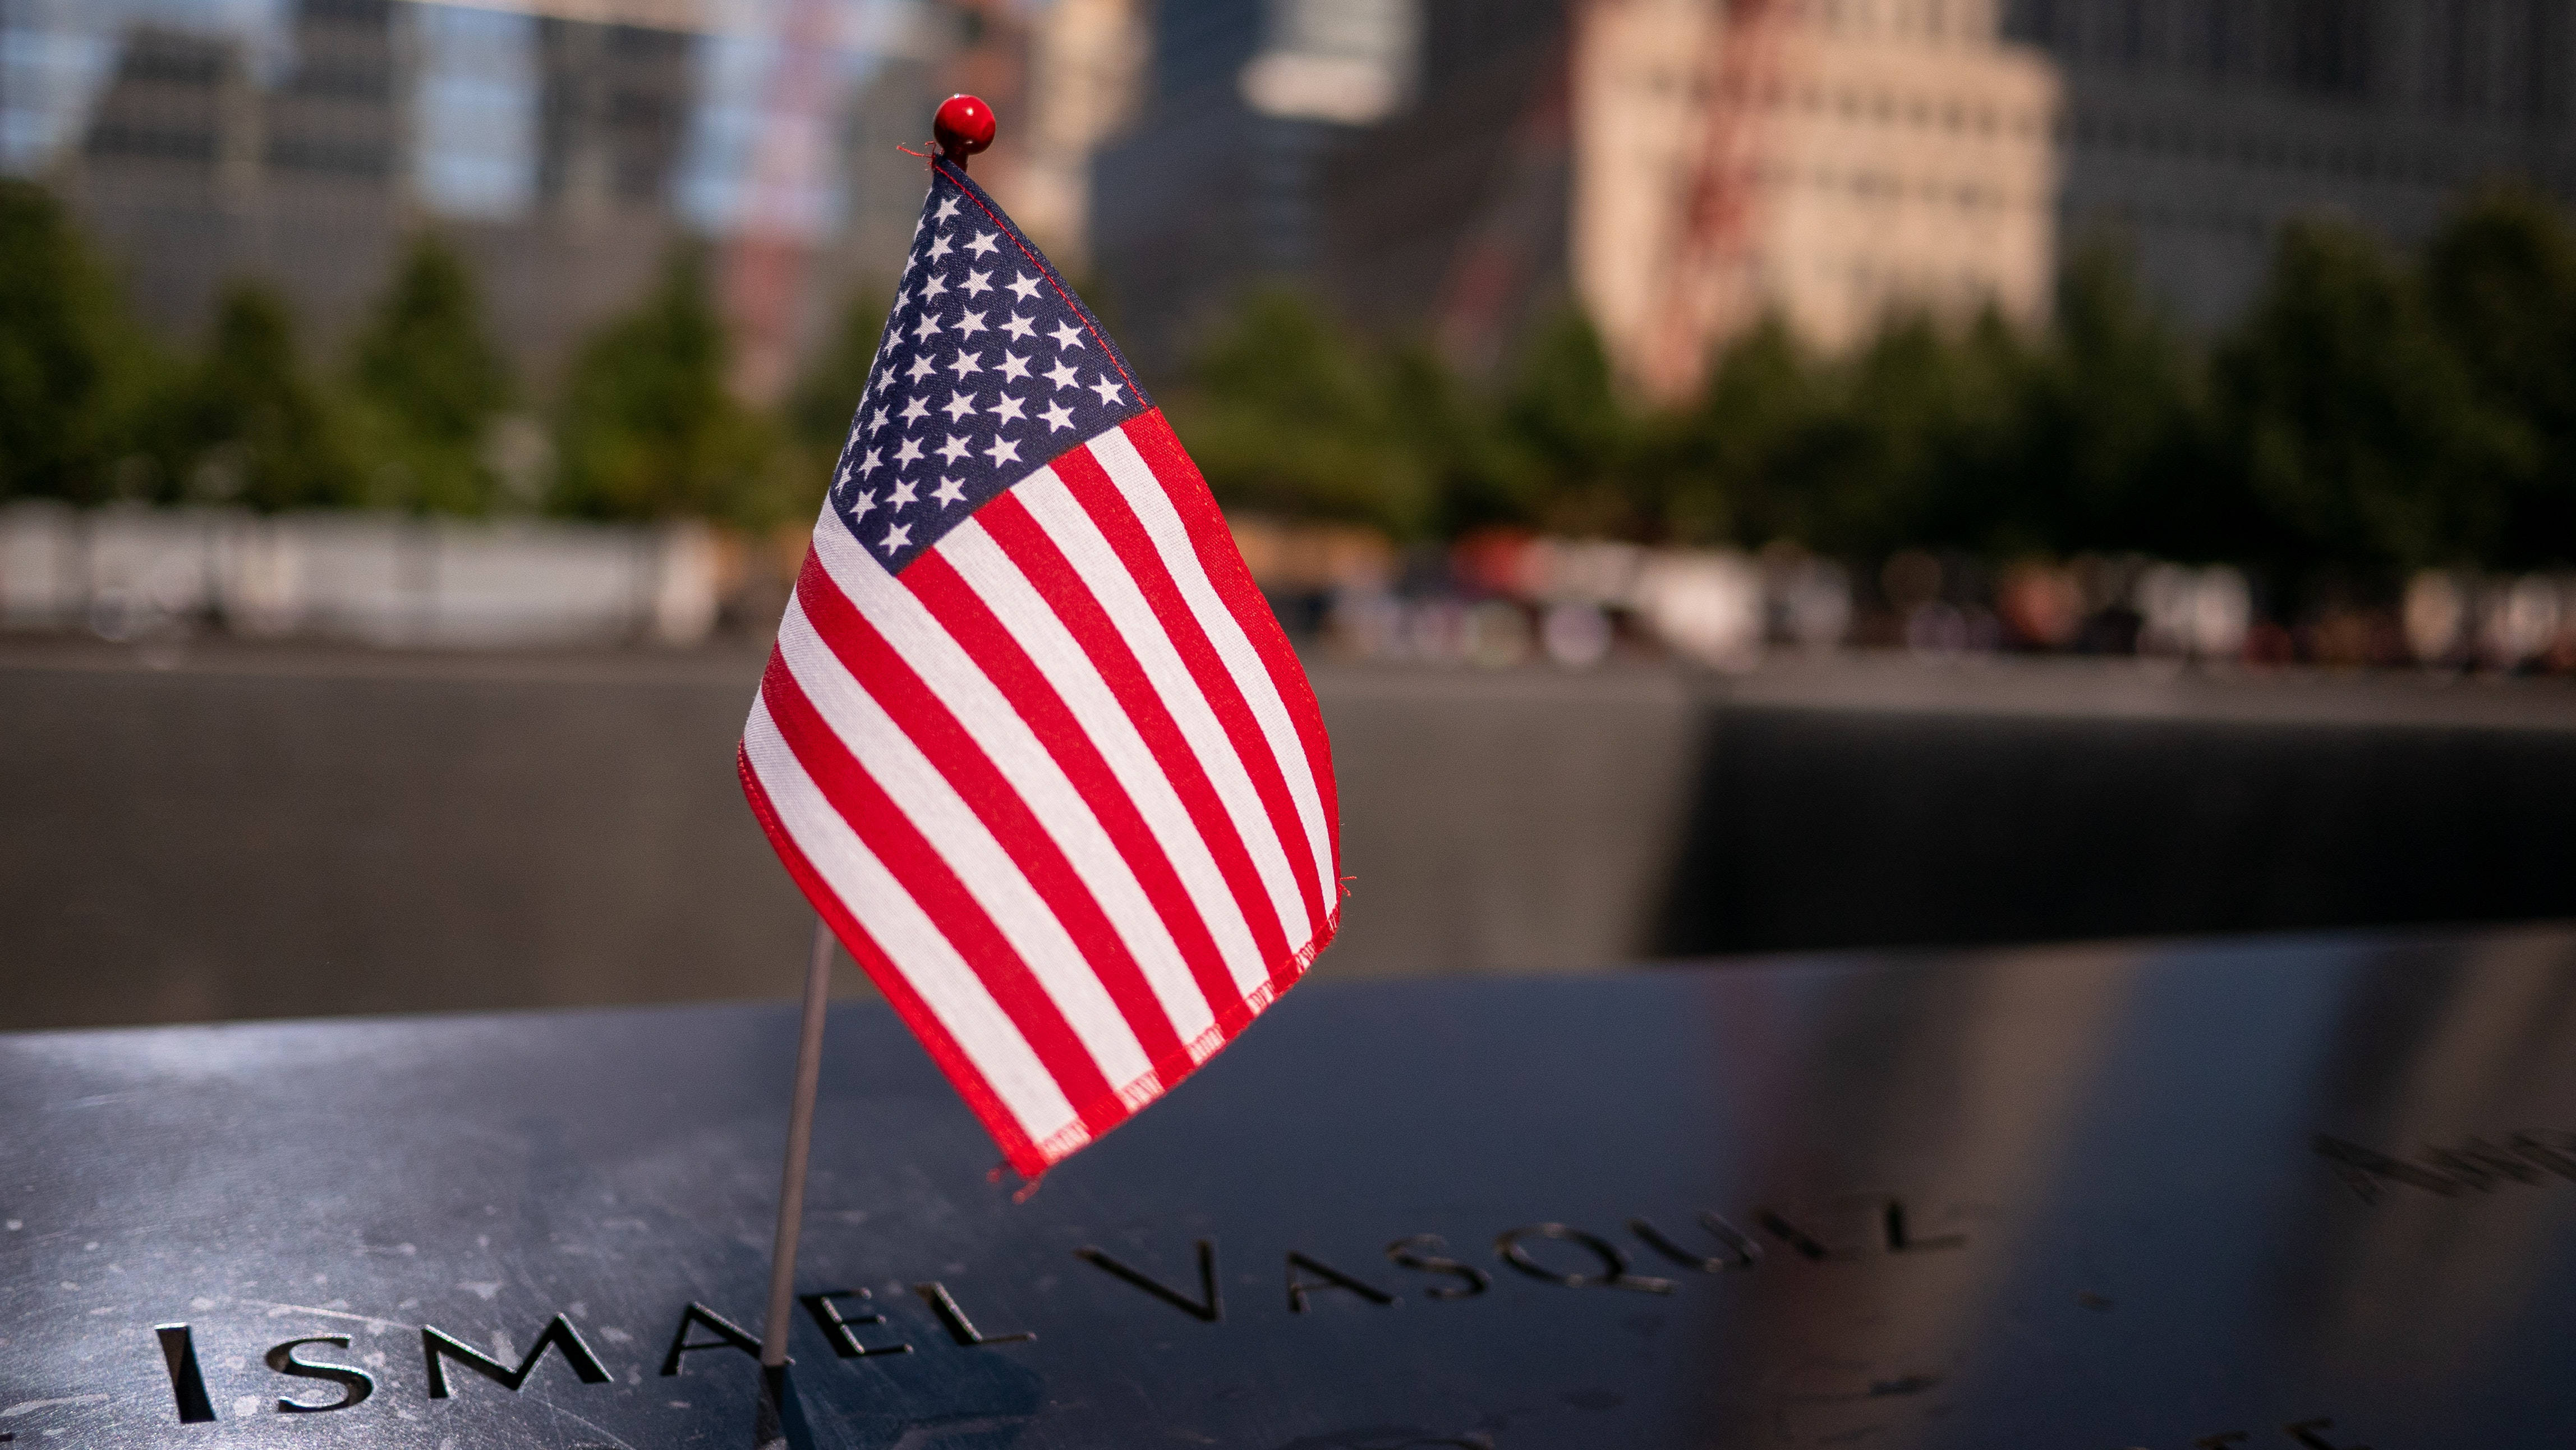 Memorialdel 911 Con La Bandera Americana En Pie Fondo de pantalla